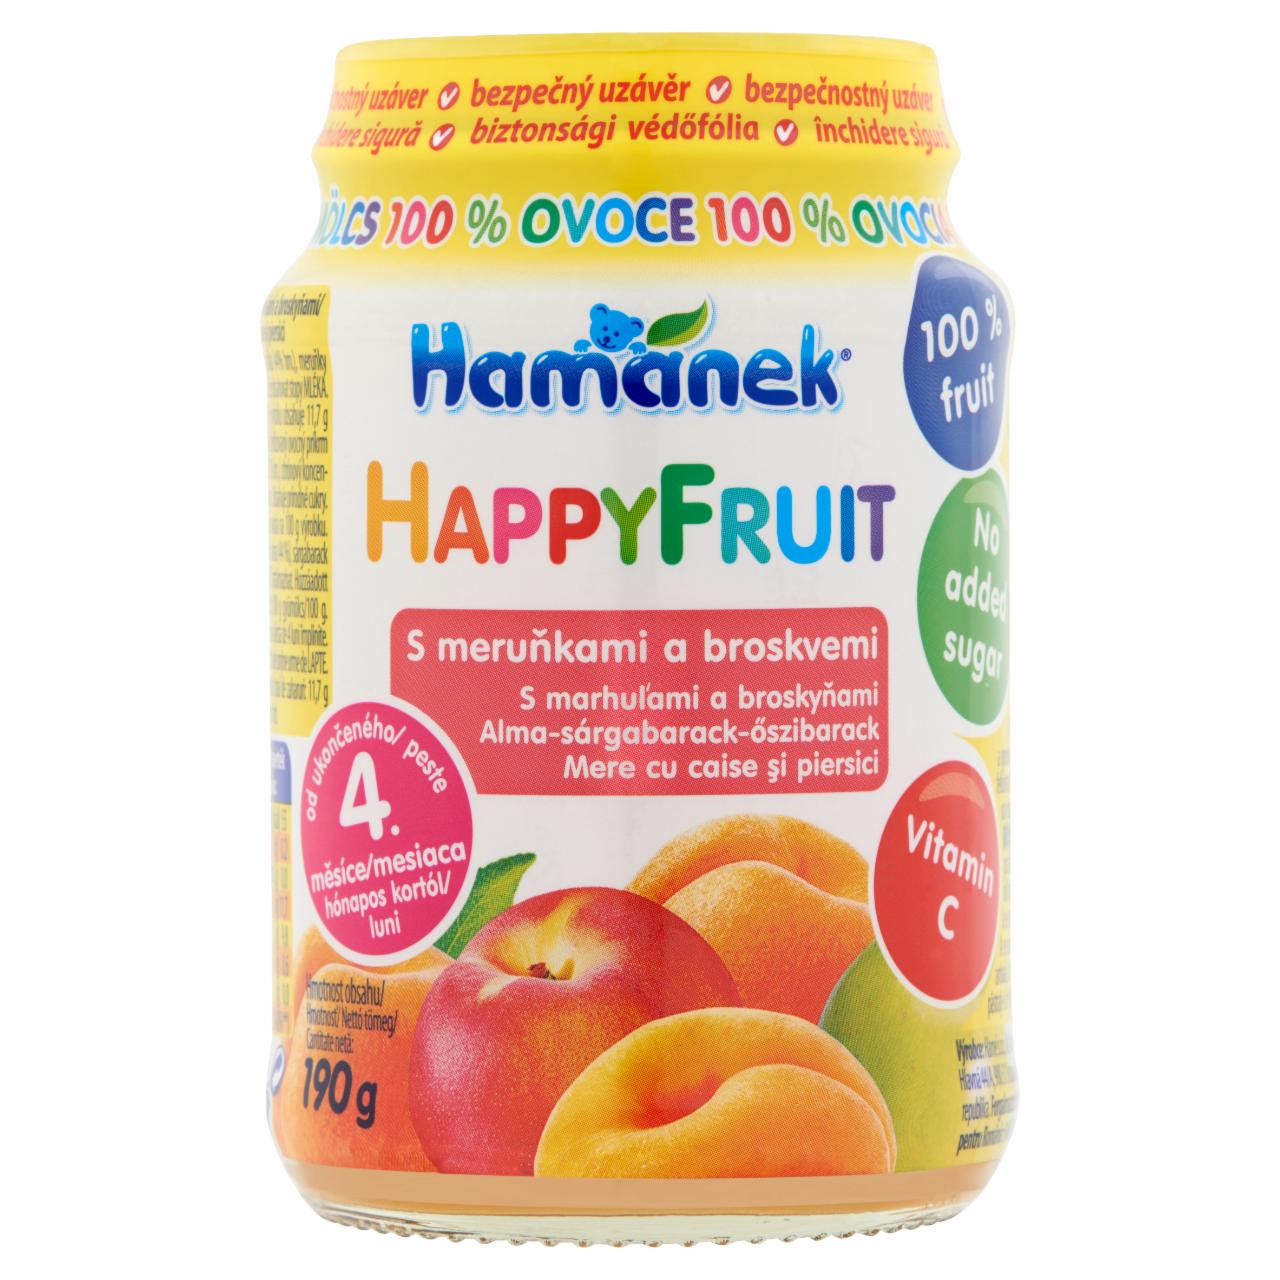 Képek - Hamánek HappyFruit alma-sárgabarack-őszibarack bébidesszert 4 hónapos kortól 190 g